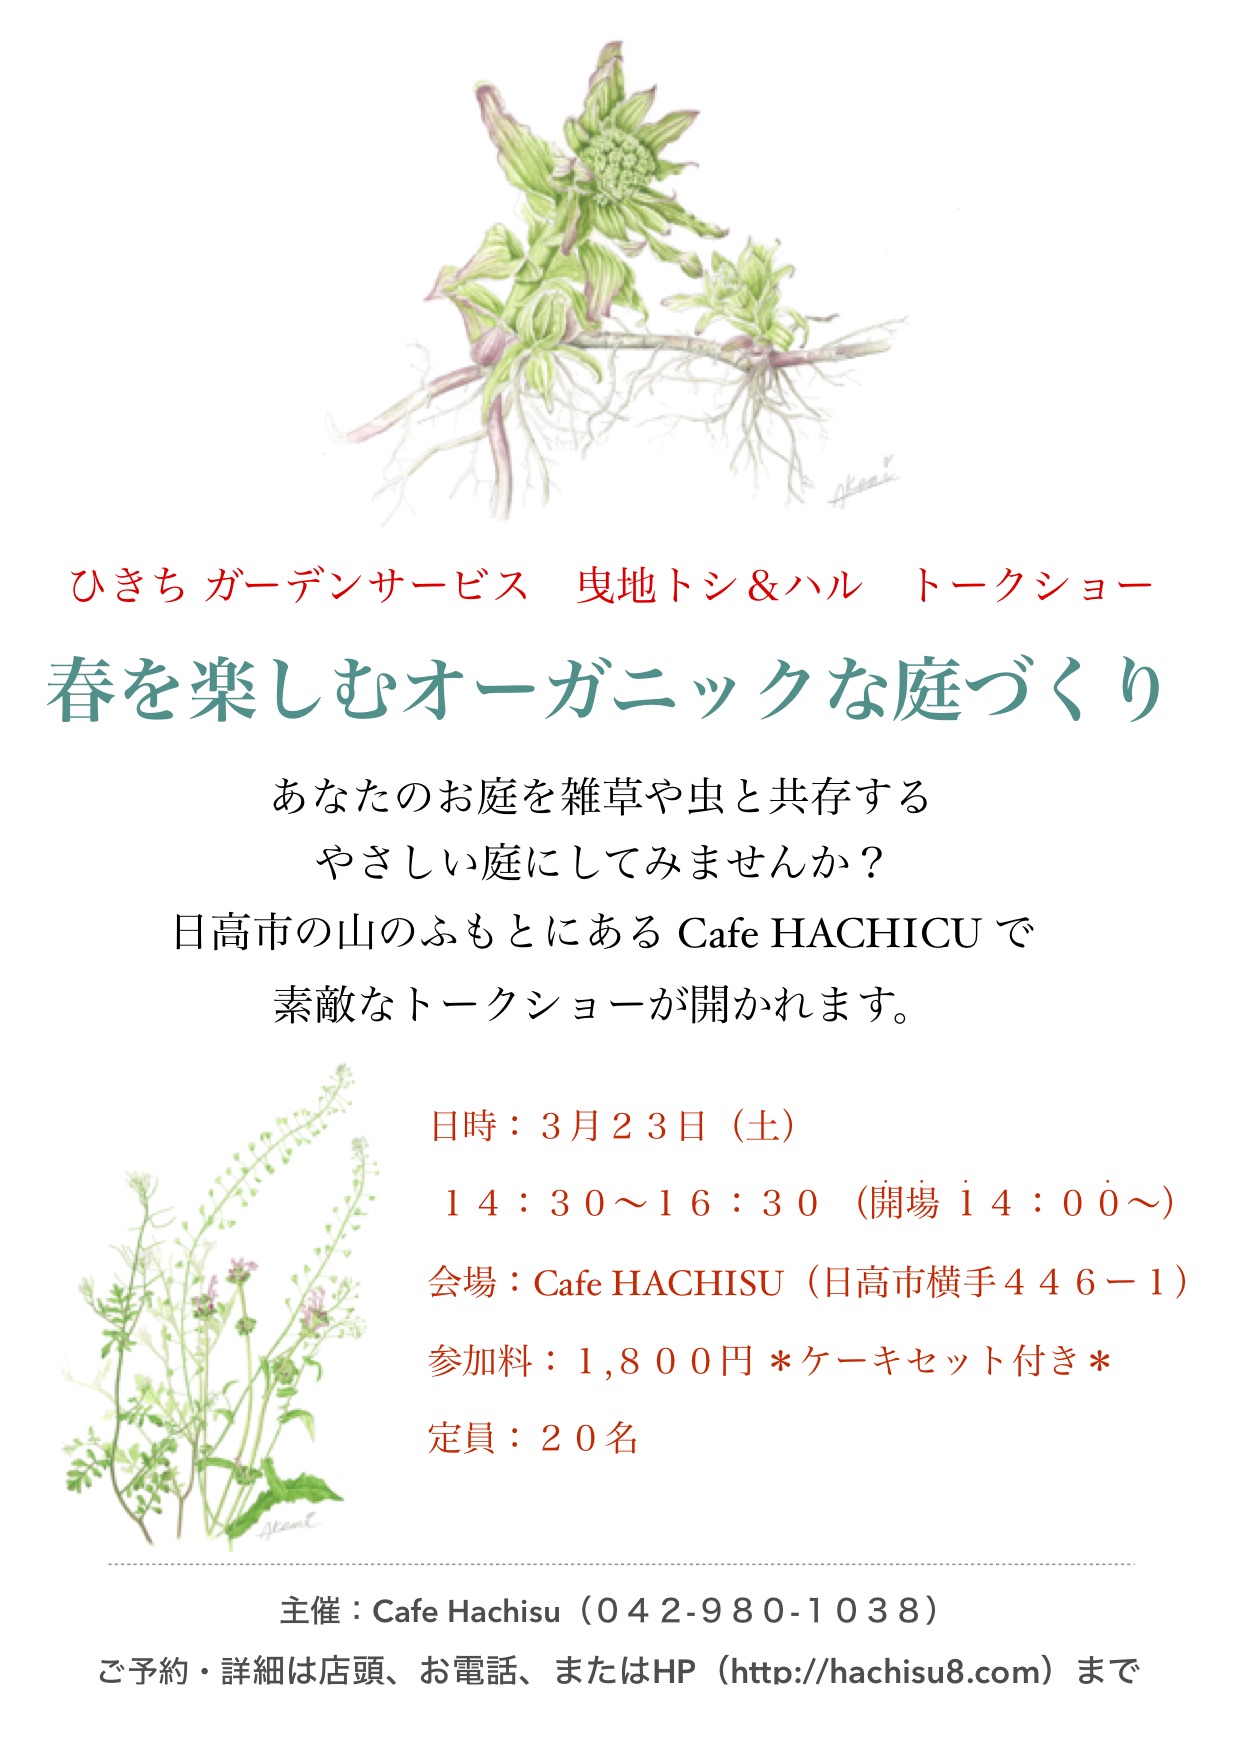 3 23 土 曳地トシ ハル トークショー 春を楽しむオーガニックな庭づくり Cafe Hachisu ハチス